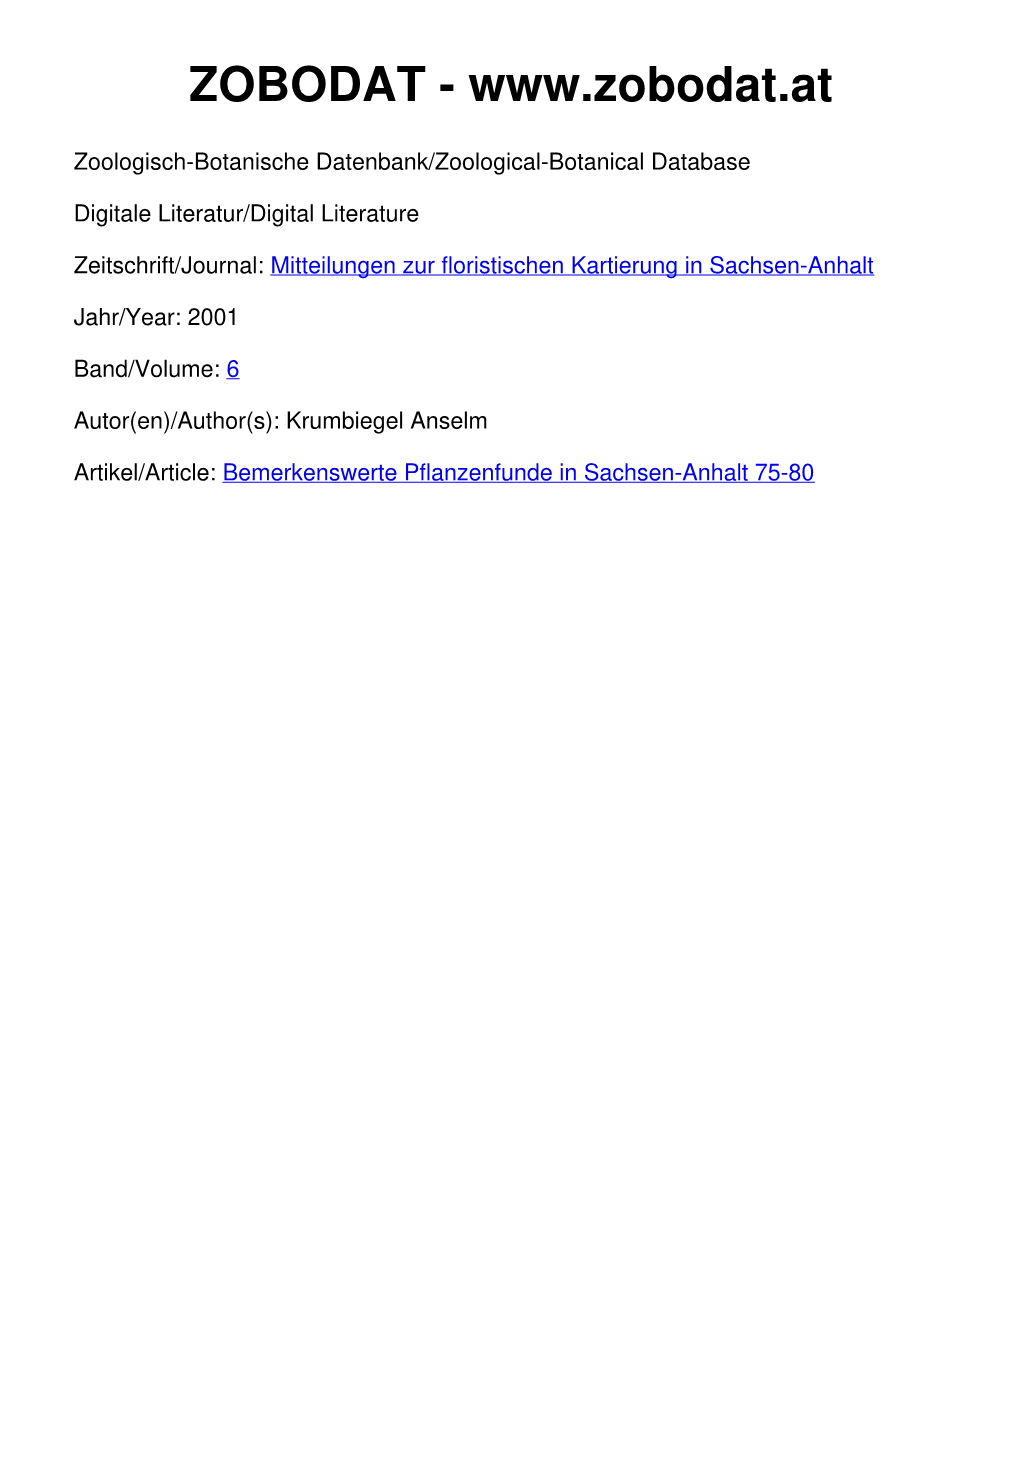 Bemerkenswerte Pflanzenfunde in Sachsen-Anhalt 75-80 Mitt